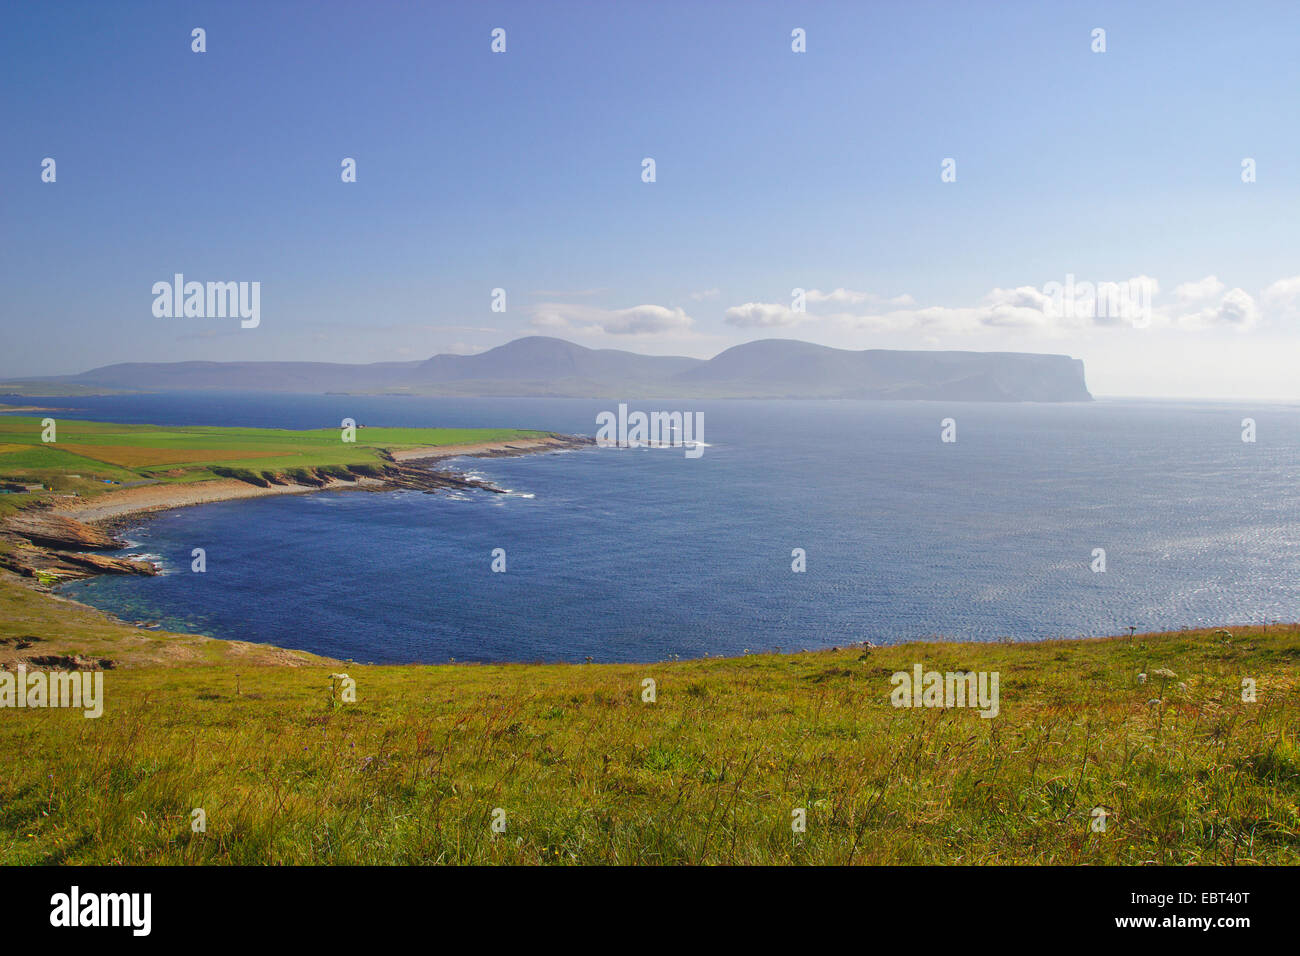 Vue à travers l'extrémité sud de la partie continentale de l'île d'Orkney Hoy, Royaume-Uni, Ecosse, Orcades, Orkney Mainland Banque D'Images